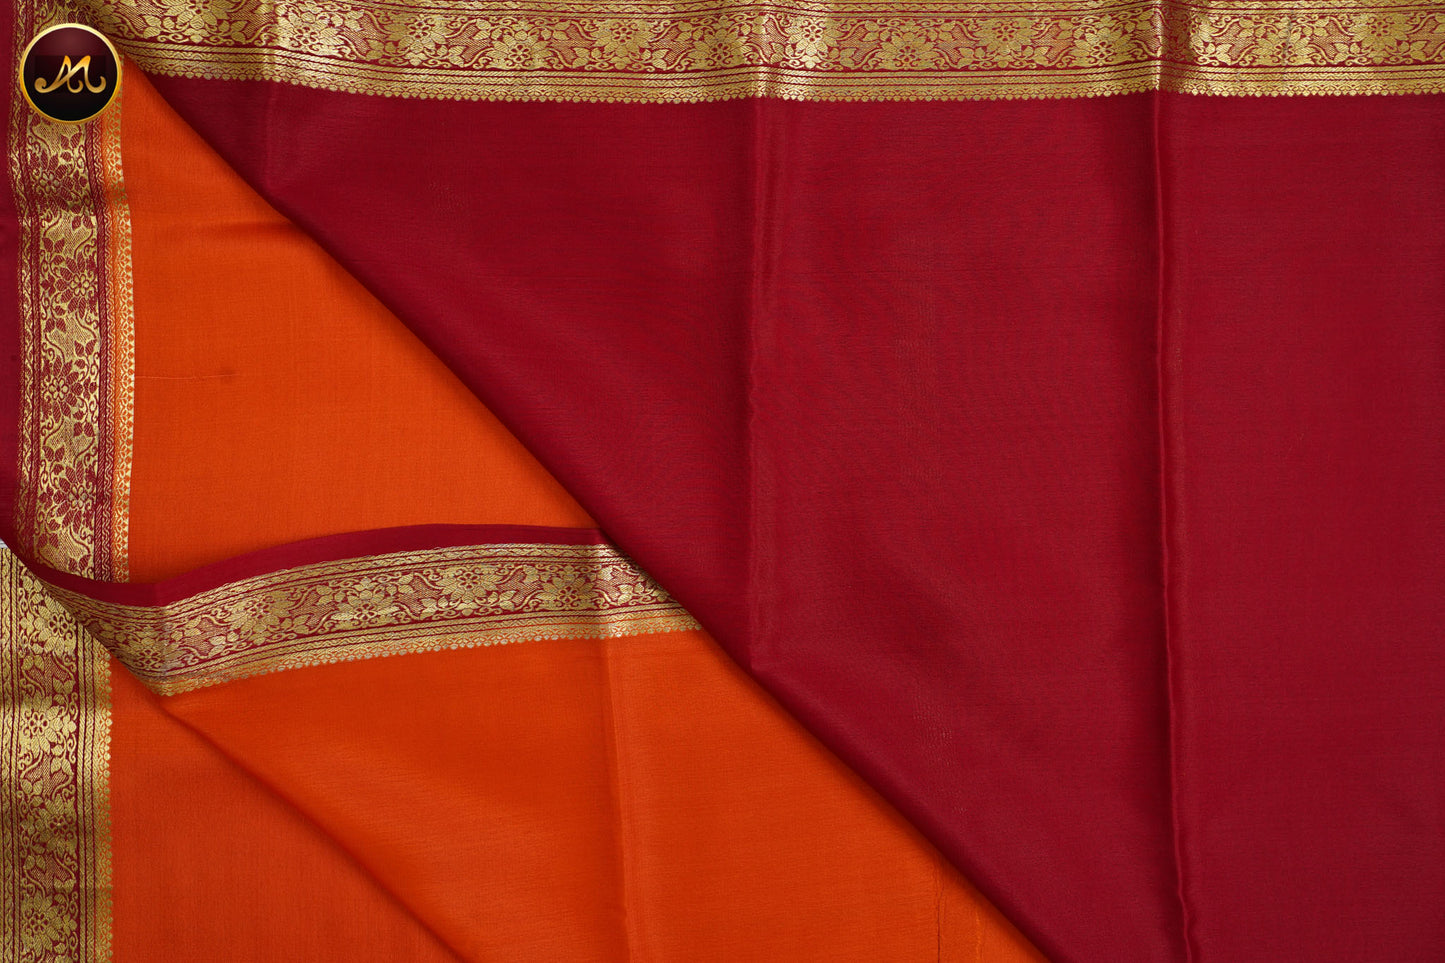 Mysore Crepe Silk saree Orange and red combination Gold zari Border